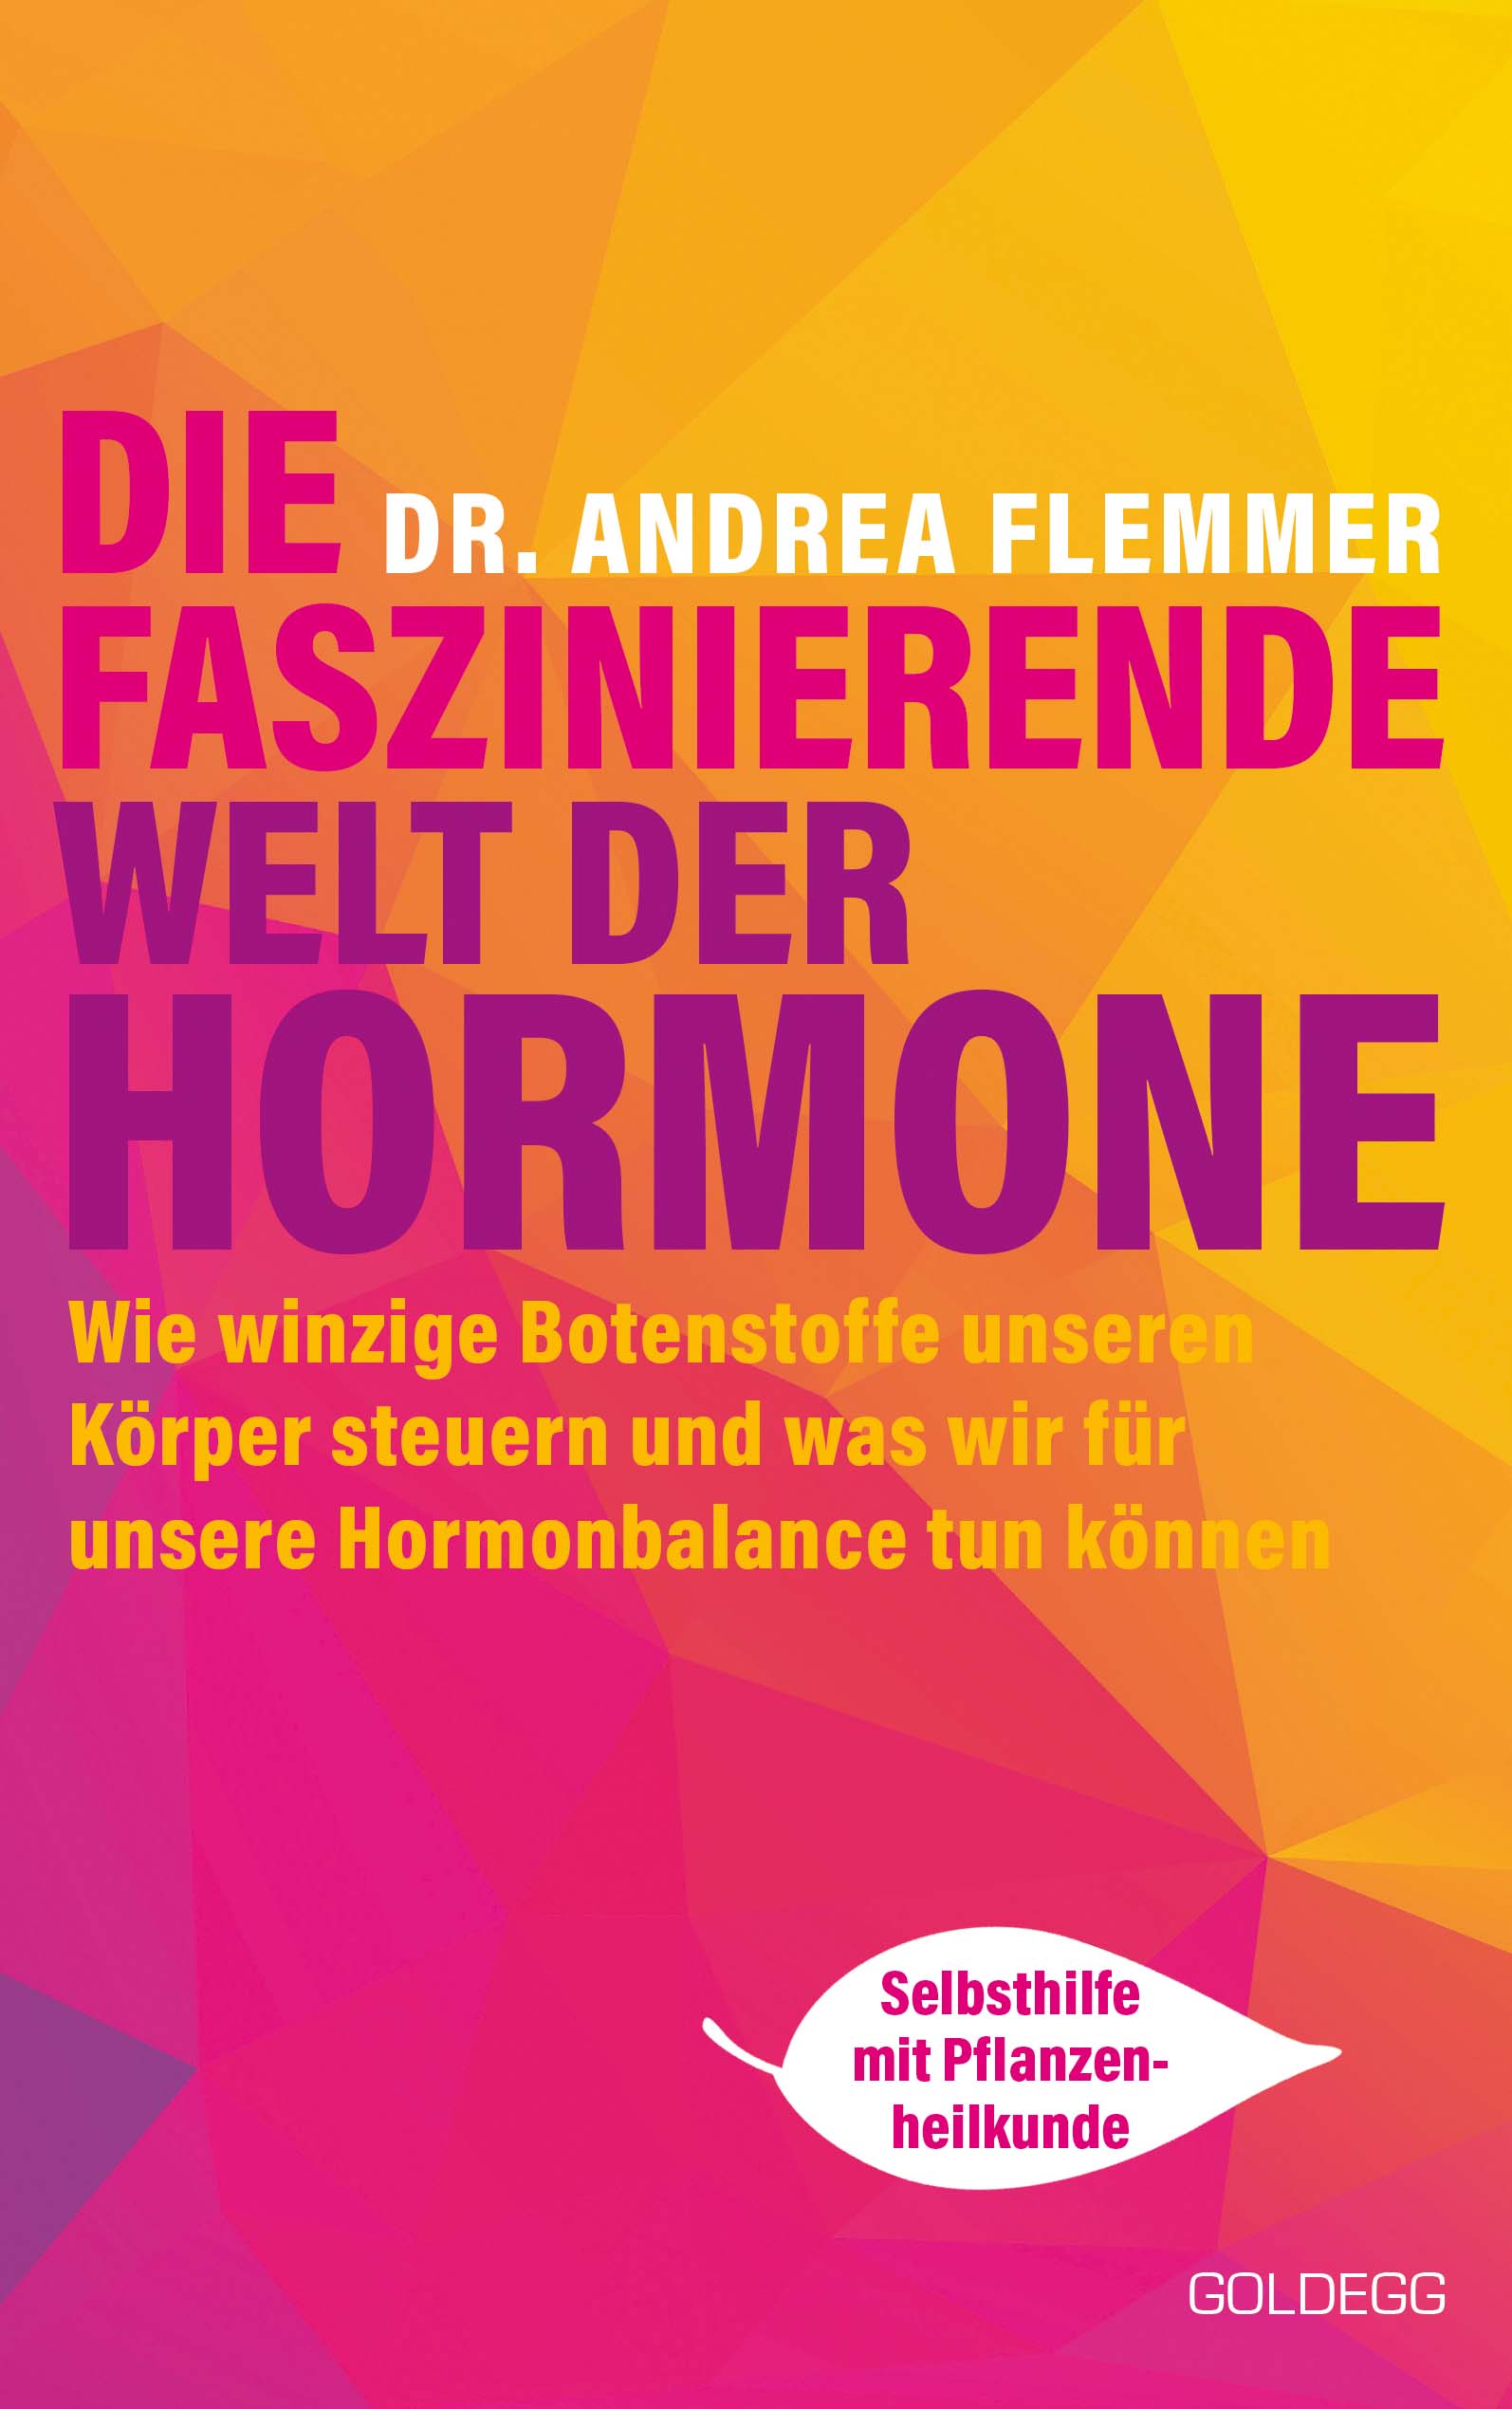 Cover - Die faszinierende Welt der Hormone - web small